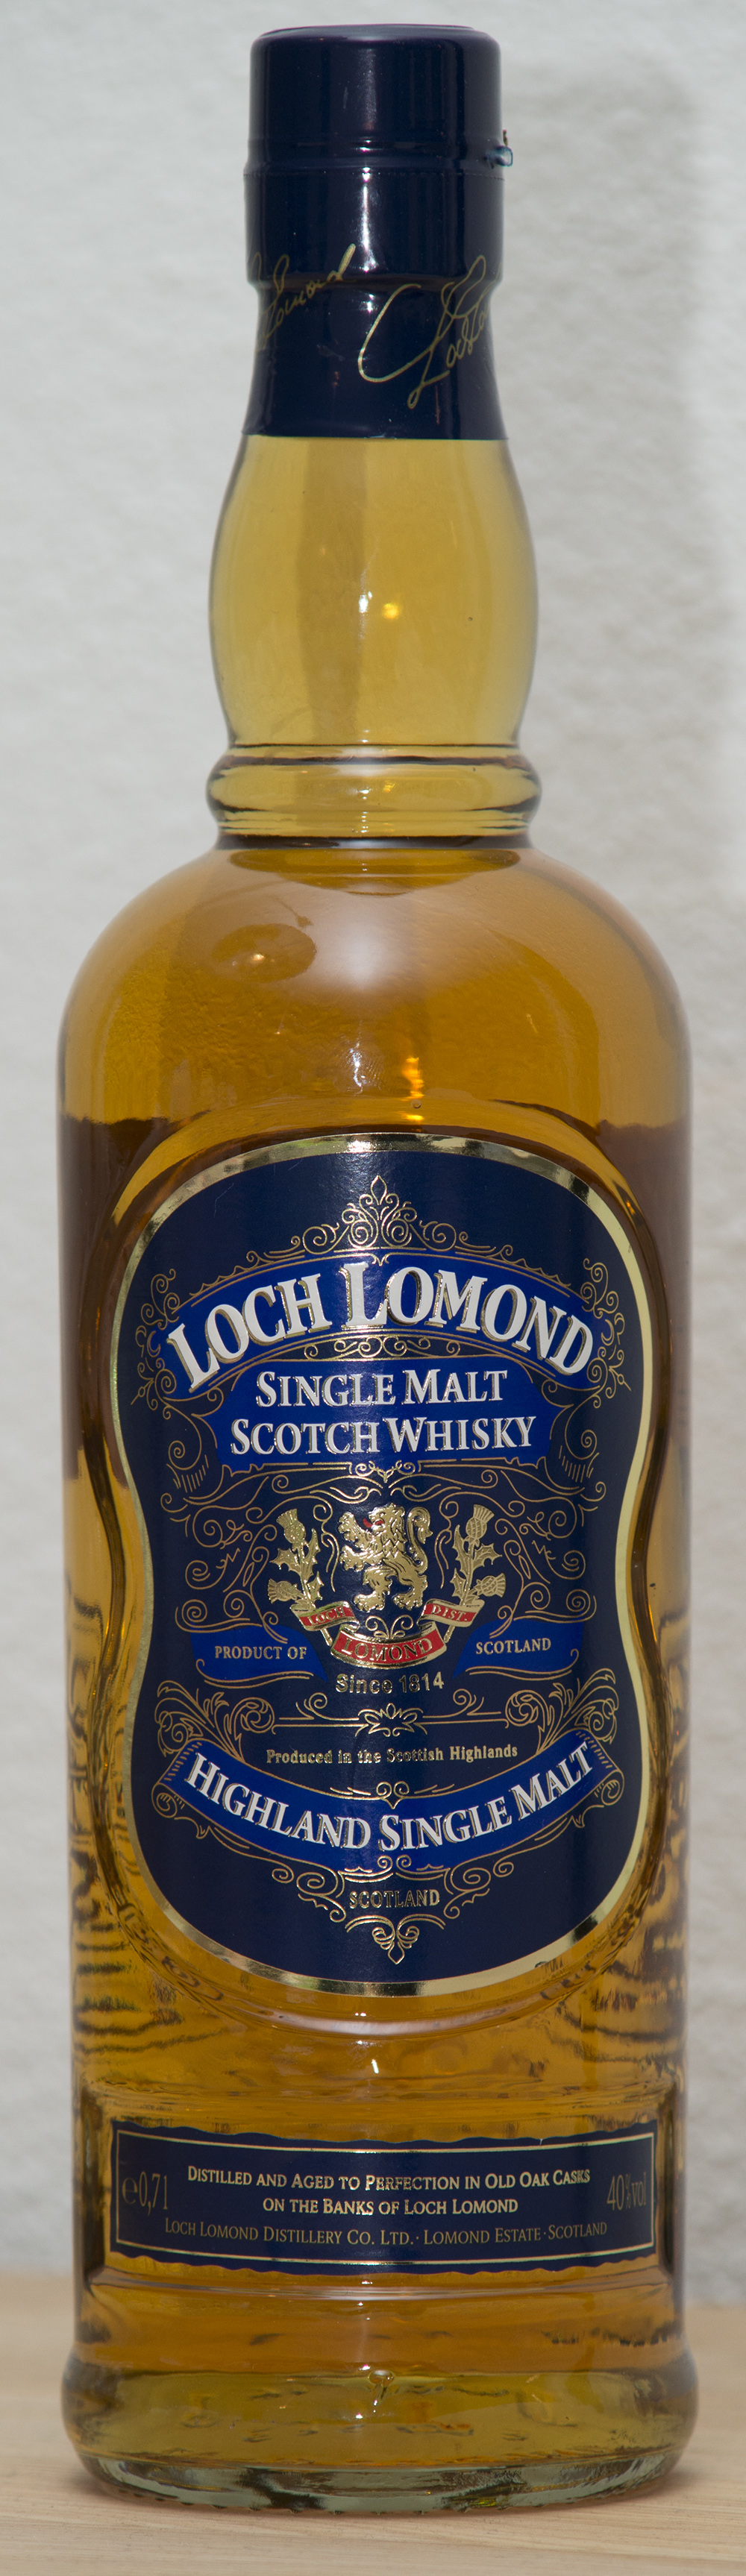 Billede: Loch Lomond single malt.jpg